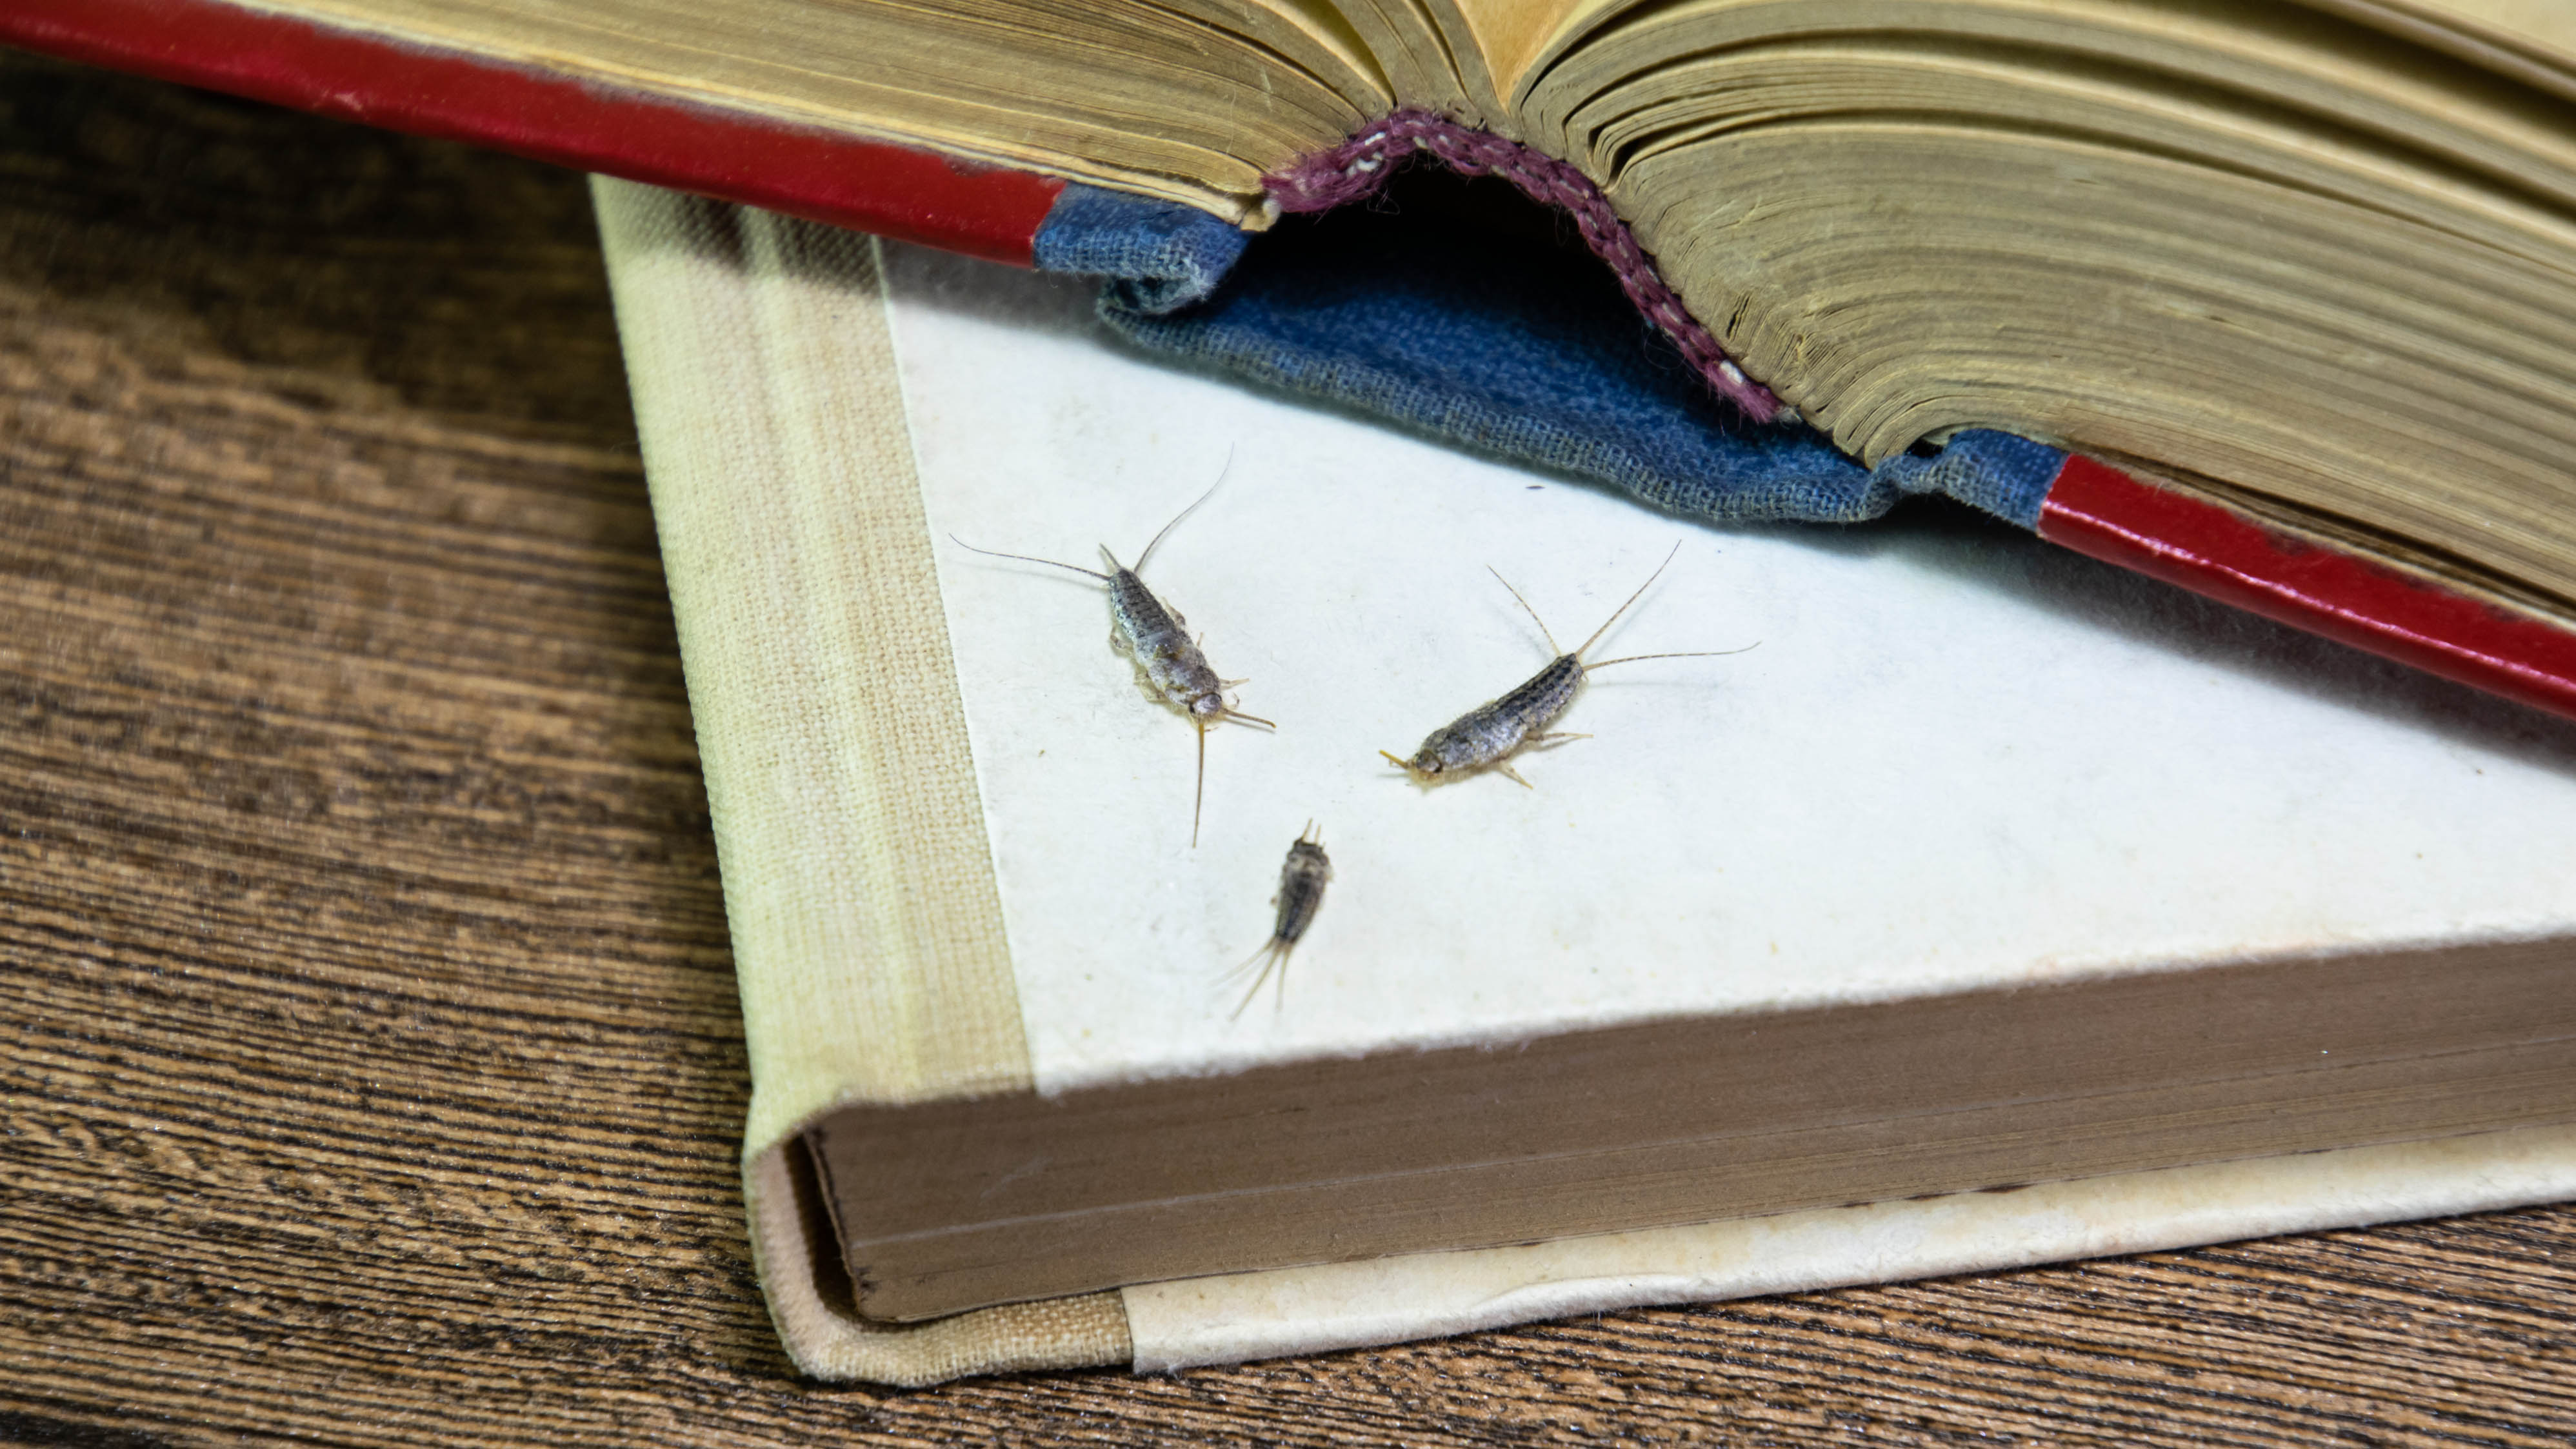 Три серебряные рыбки на книге едят бумагу